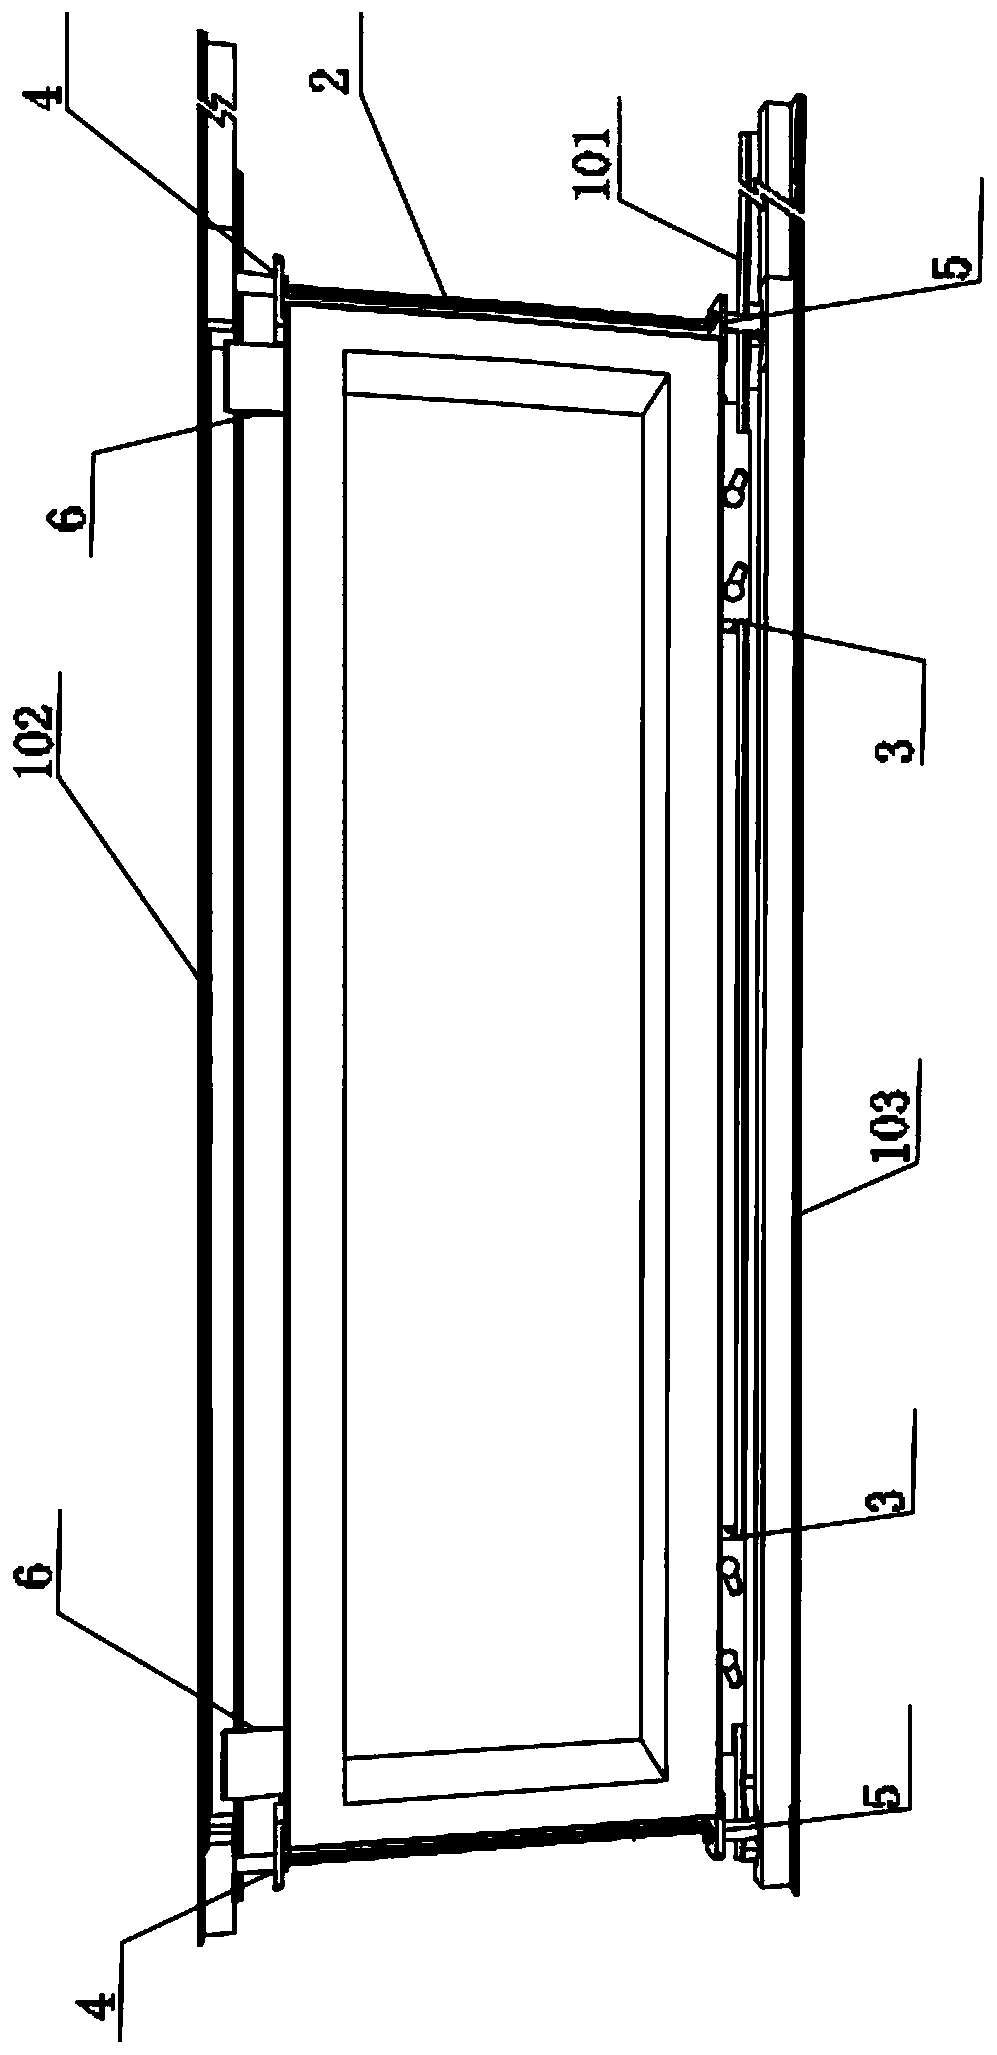 Retractable structure of sliding door and window